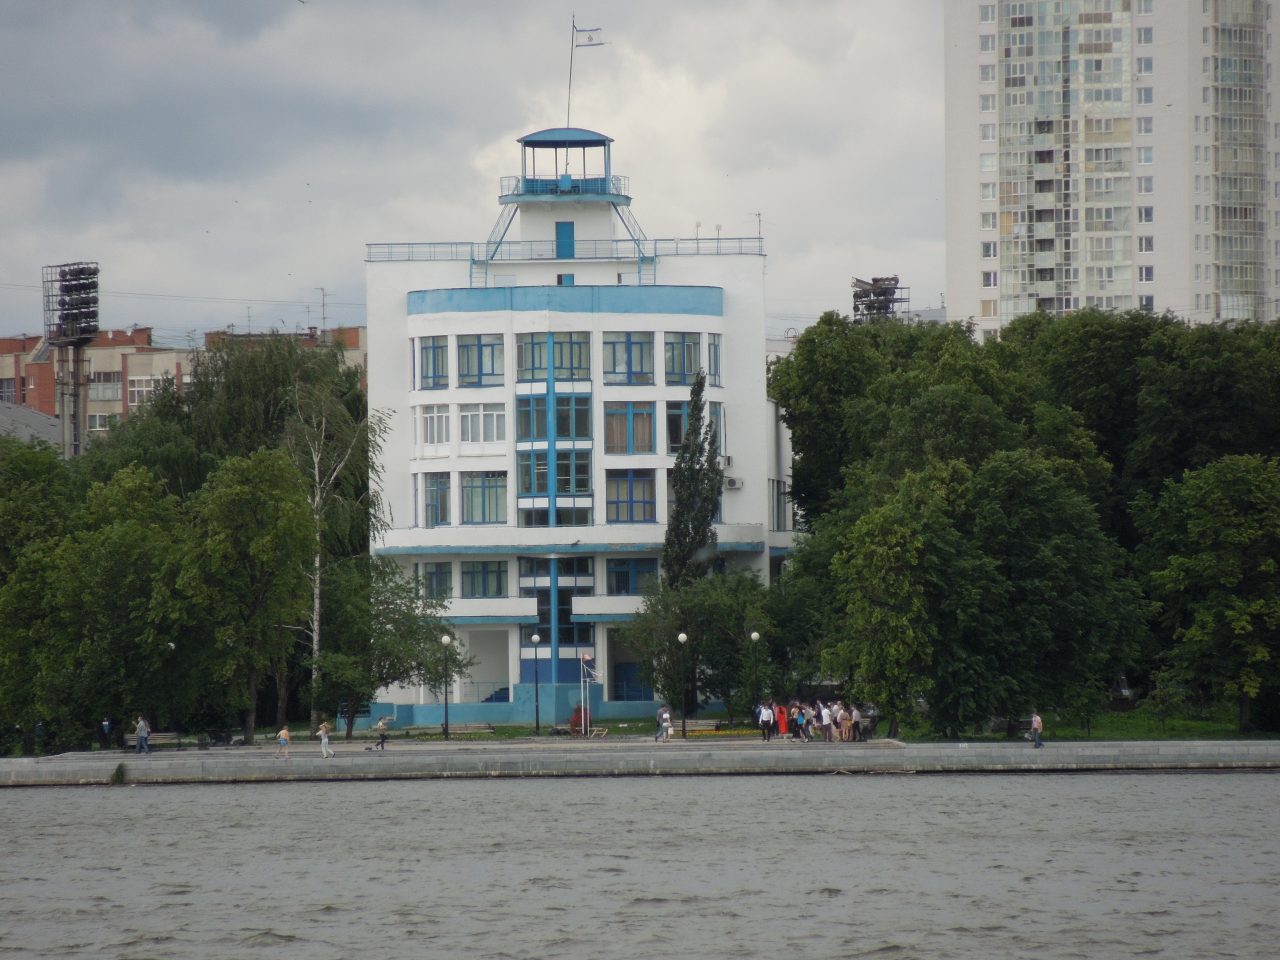 Музей спортивного общества «Динамо» в Екатеринбурге